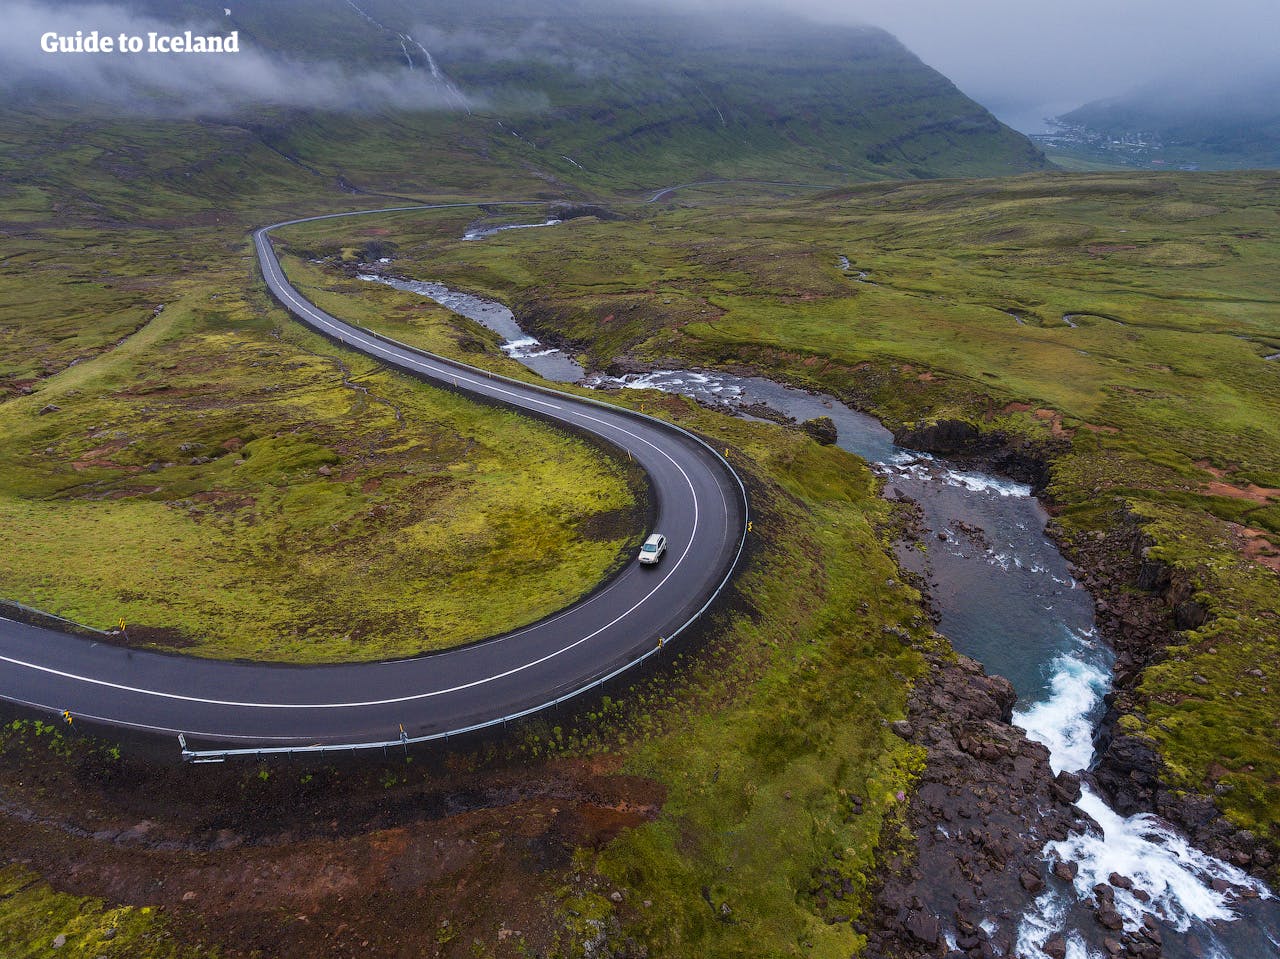 Spędź 2 tygodnie na Islandii korzystając z samodzielnej wycieczki objazdowej.